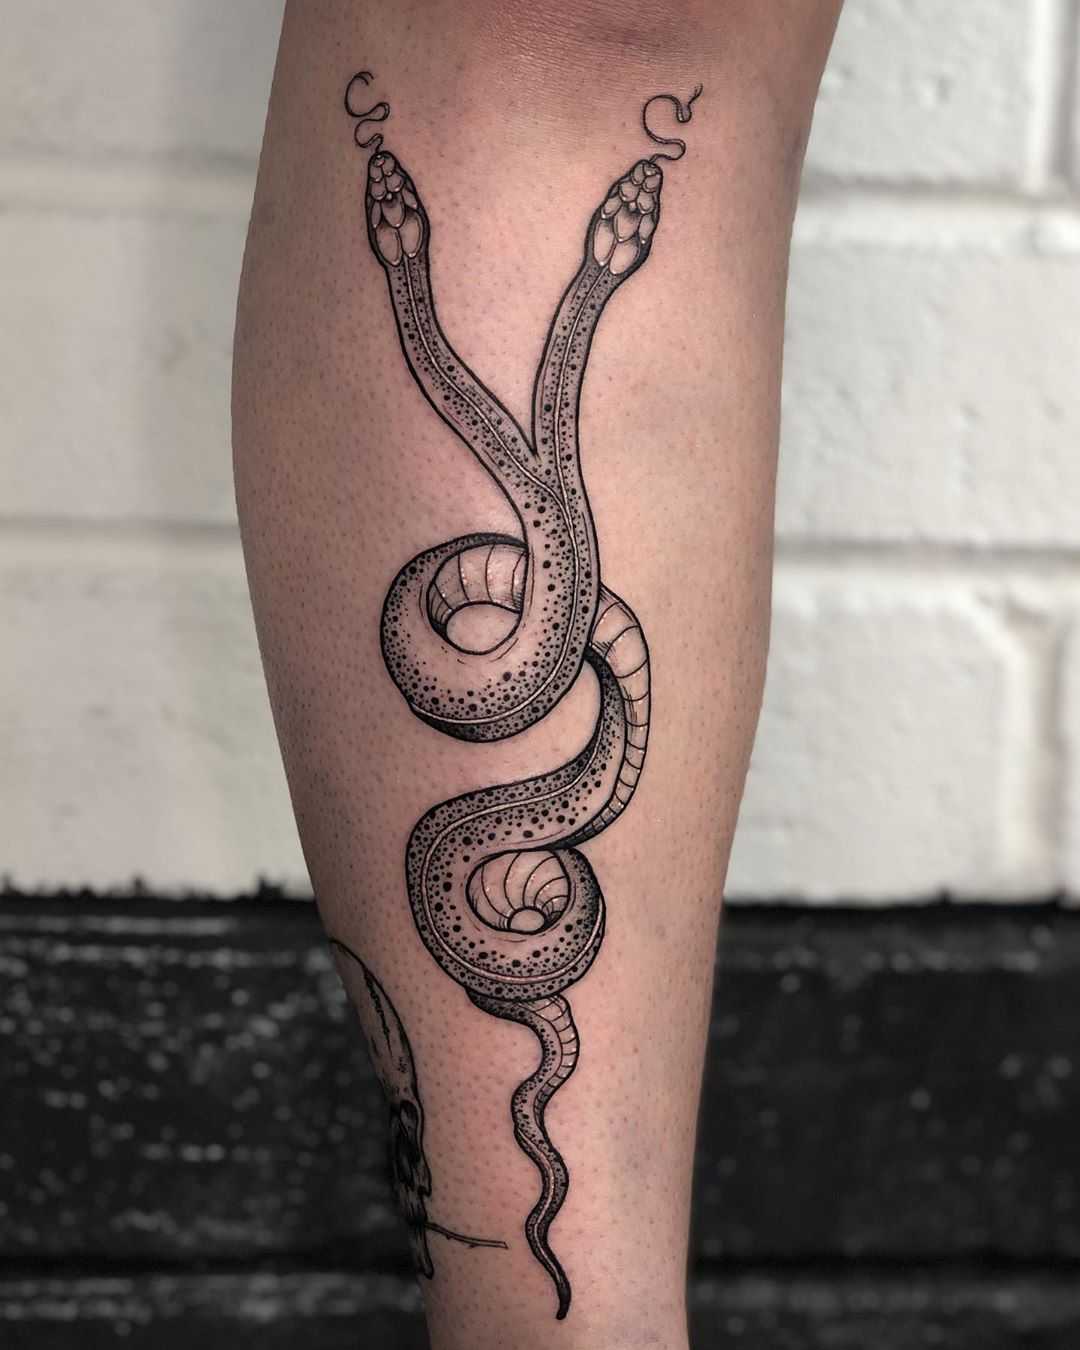 Two-headed snake tattoo by Lozzy Bones